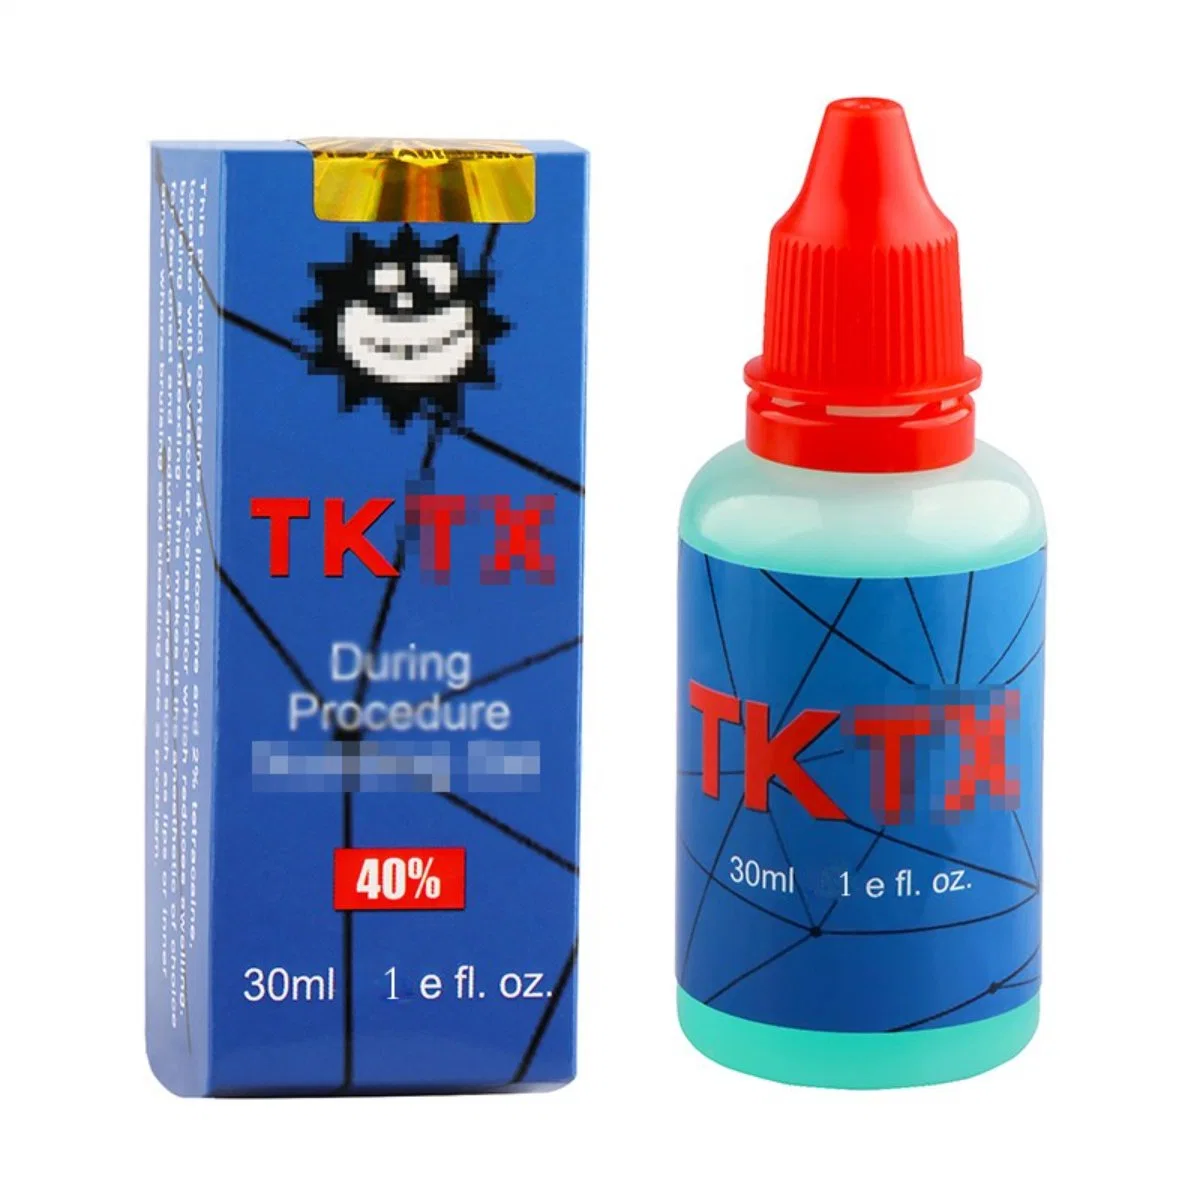 جديد Professional القوية ذات اللون الأزرق الغمري Tktx Tattoo مخدر الإبر جيل